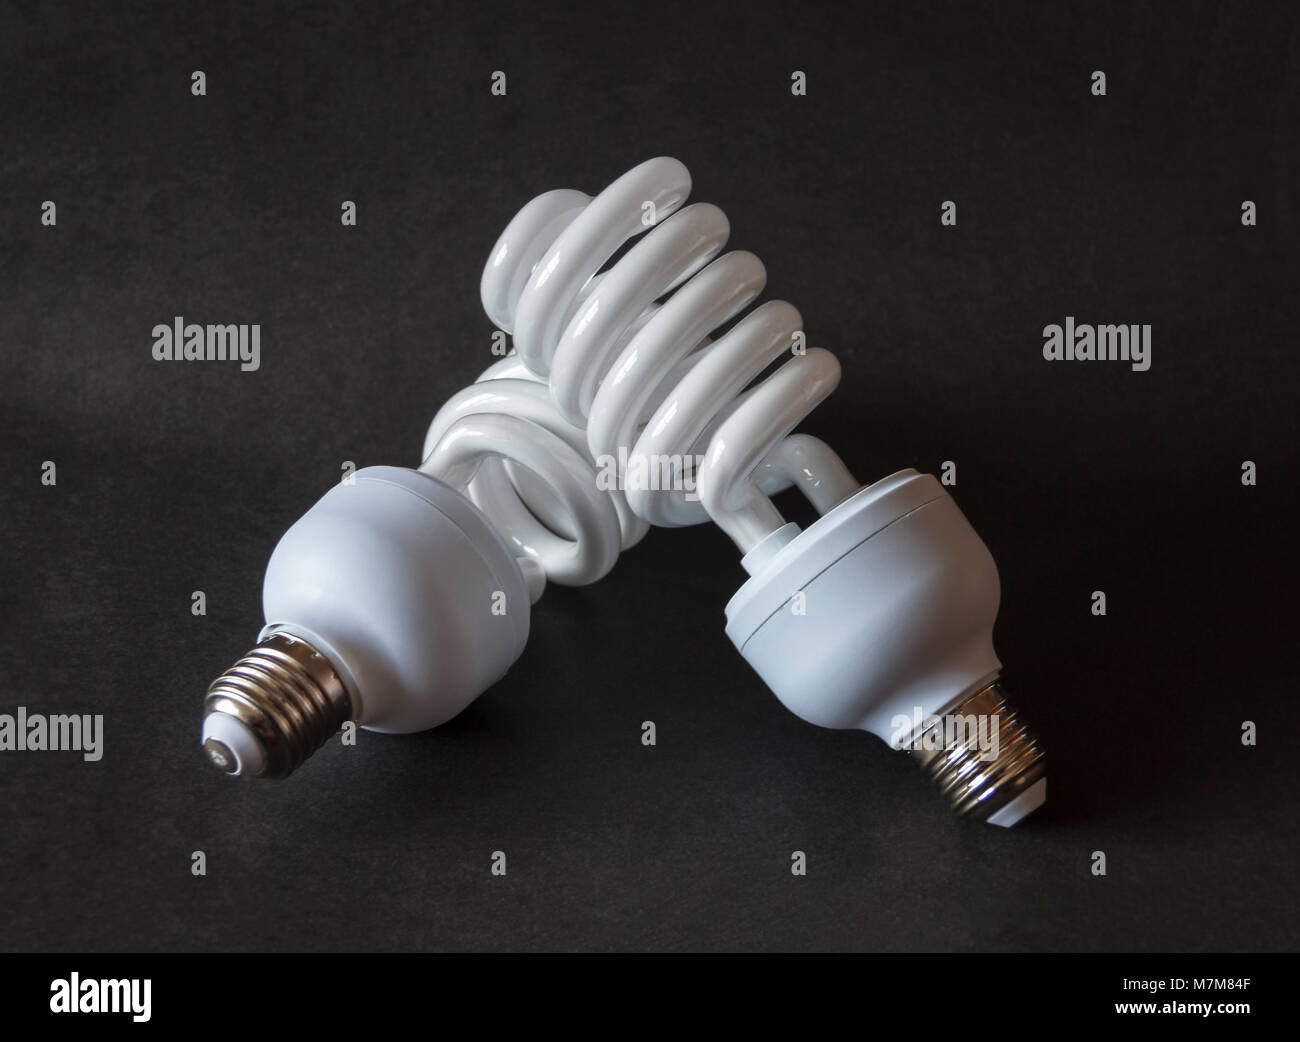 Efficacité énergétique deux fluorescent haute puissance ampoules photographiques sur fond noir Banque D'Images